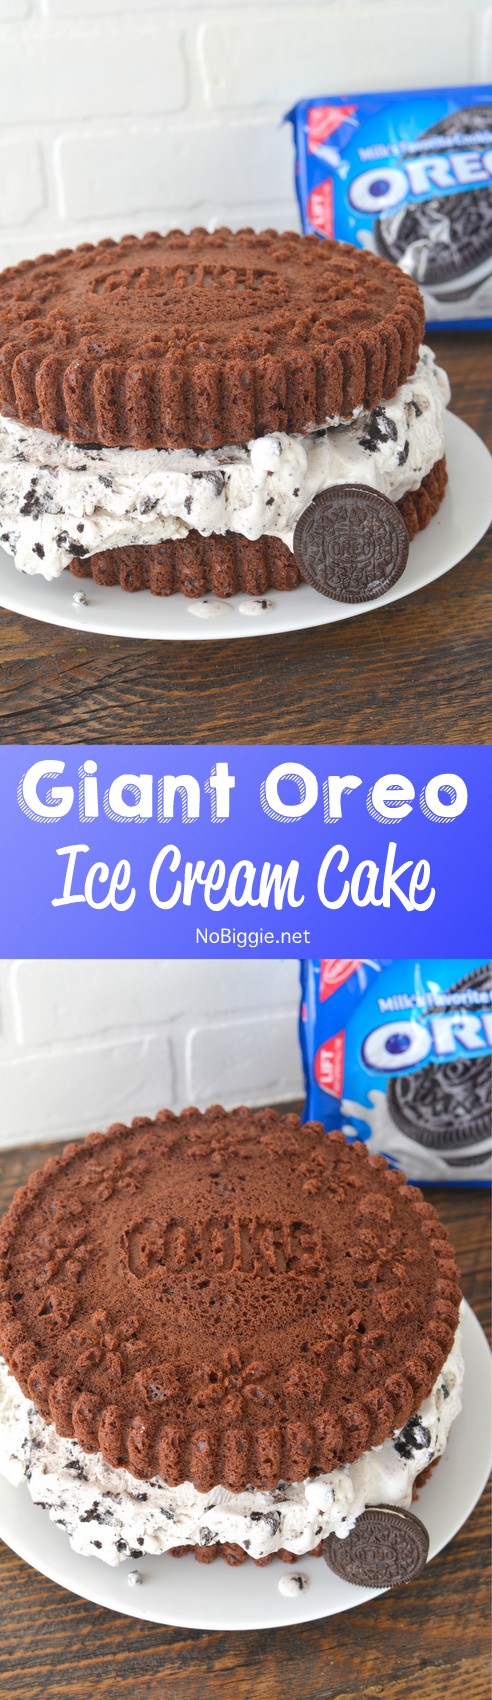 Giant Oreo Cookie Ice Cream Cake | NoBiggie.net